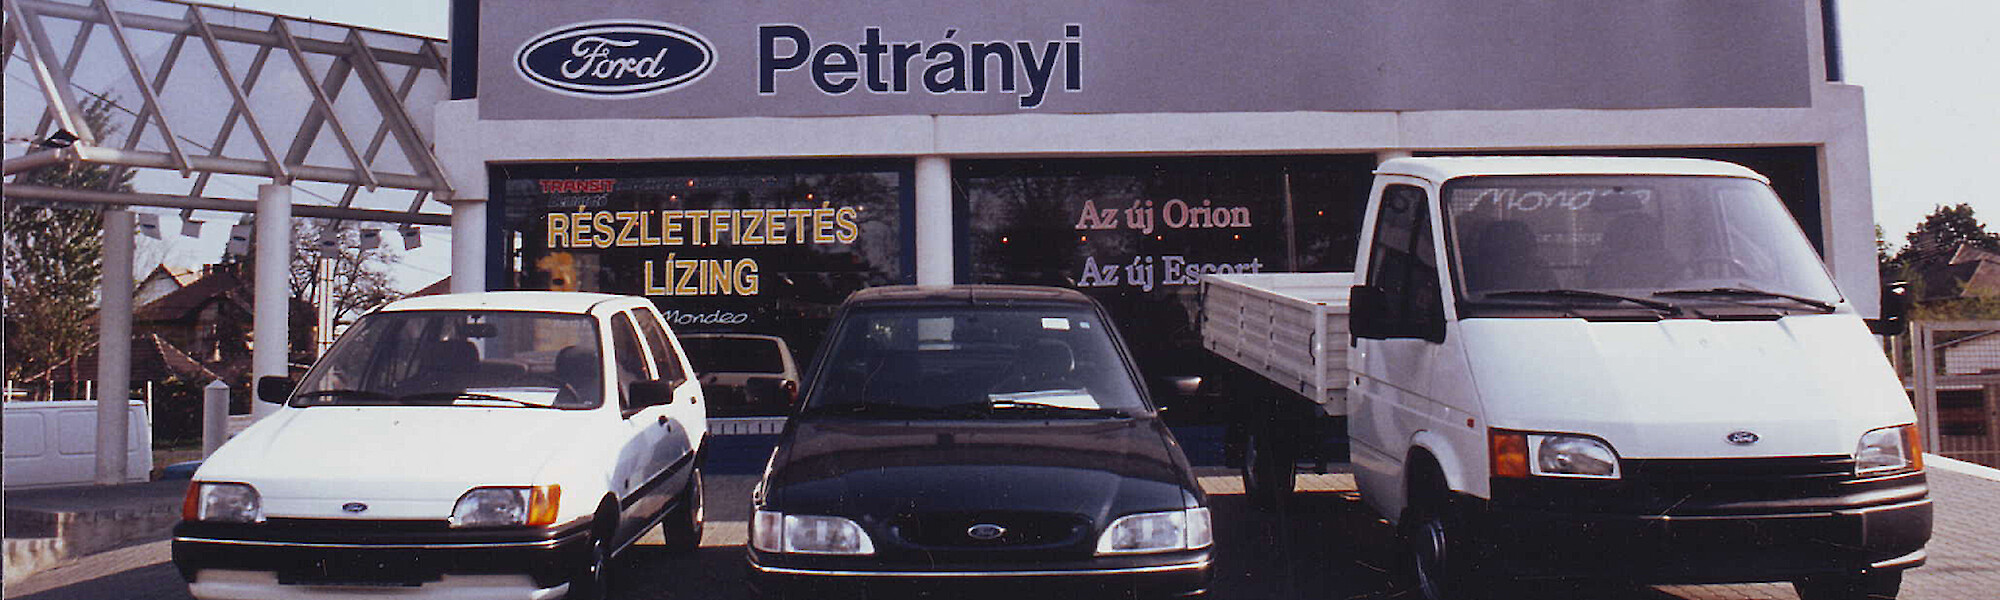 Három Ford áll a régi Ford Petrányi márkakereskedés előtt